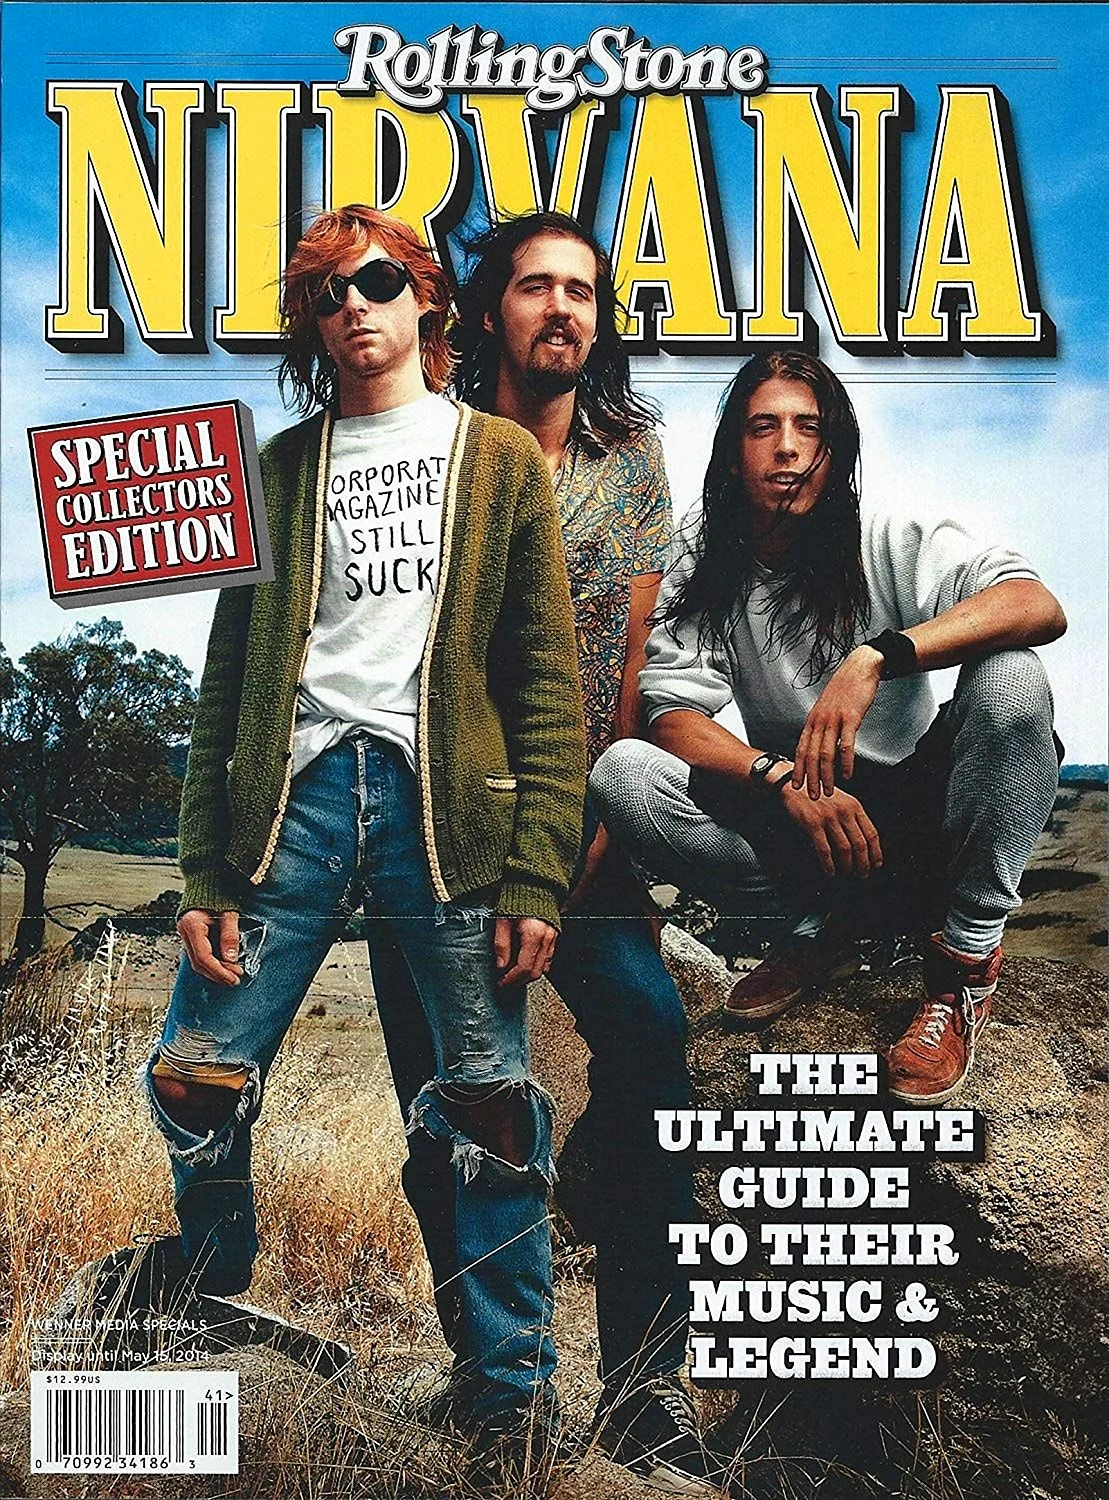 Постер Nirvana